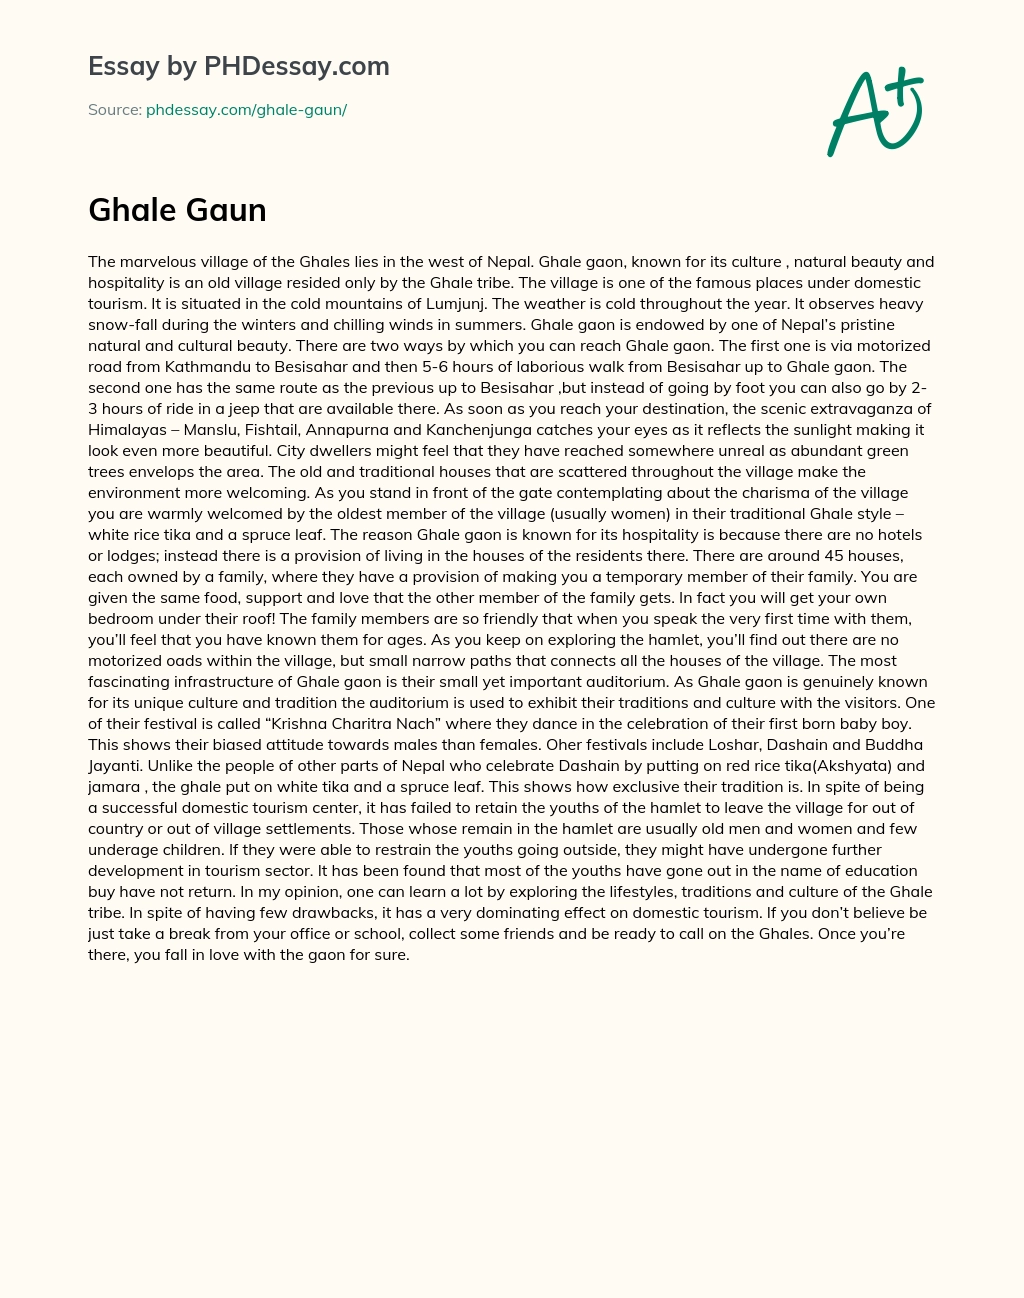 Ghale Gaun essay